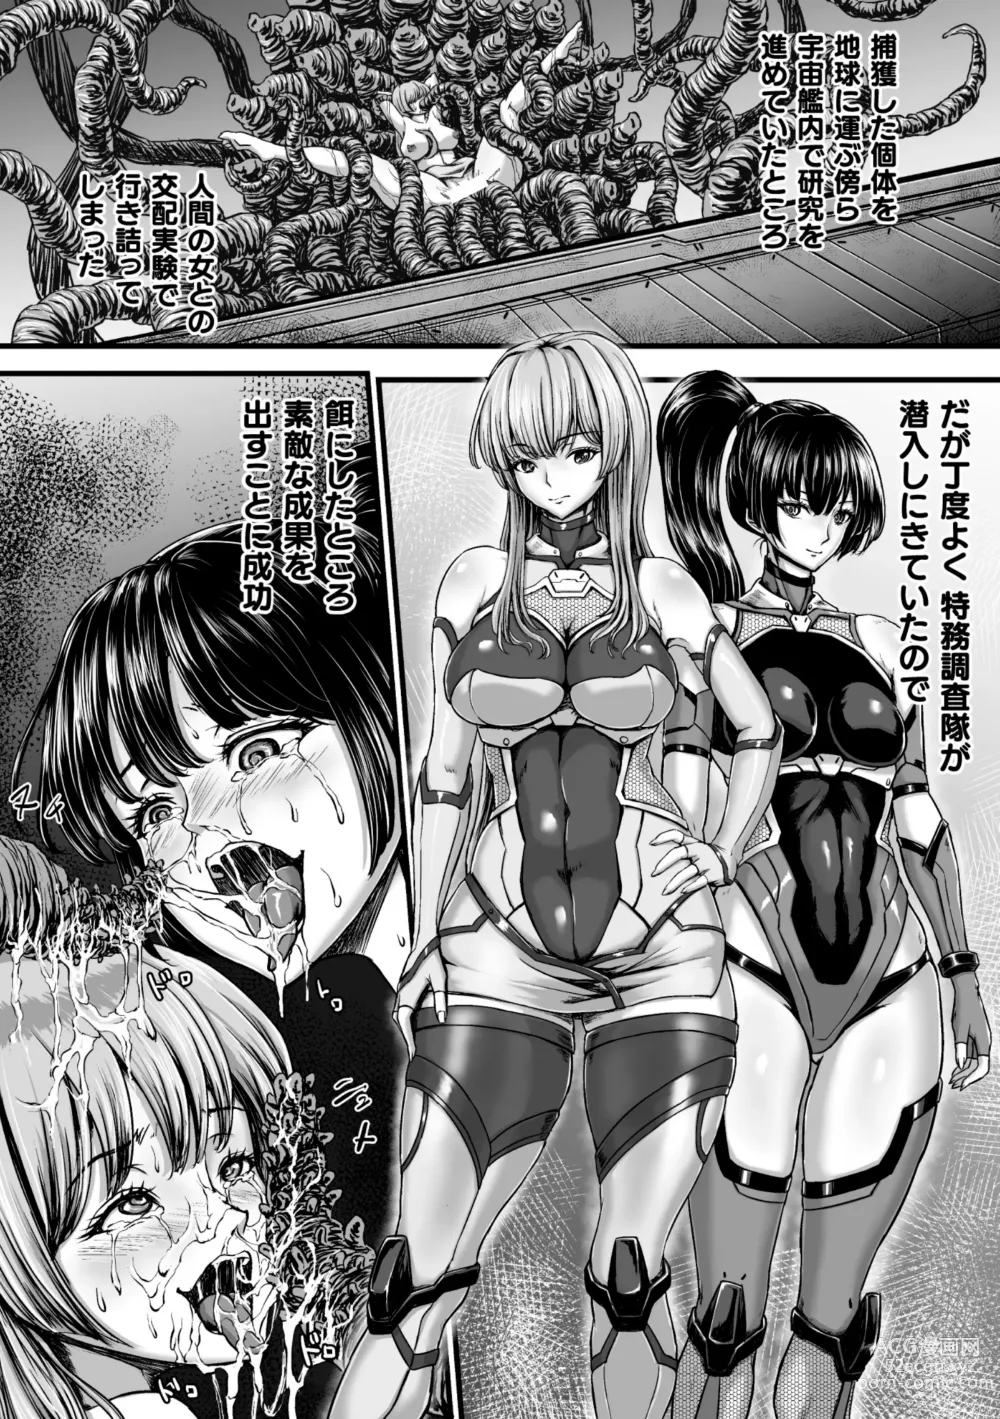 Page 4 of manga Kangoku Tentacle Battleship Episode 3